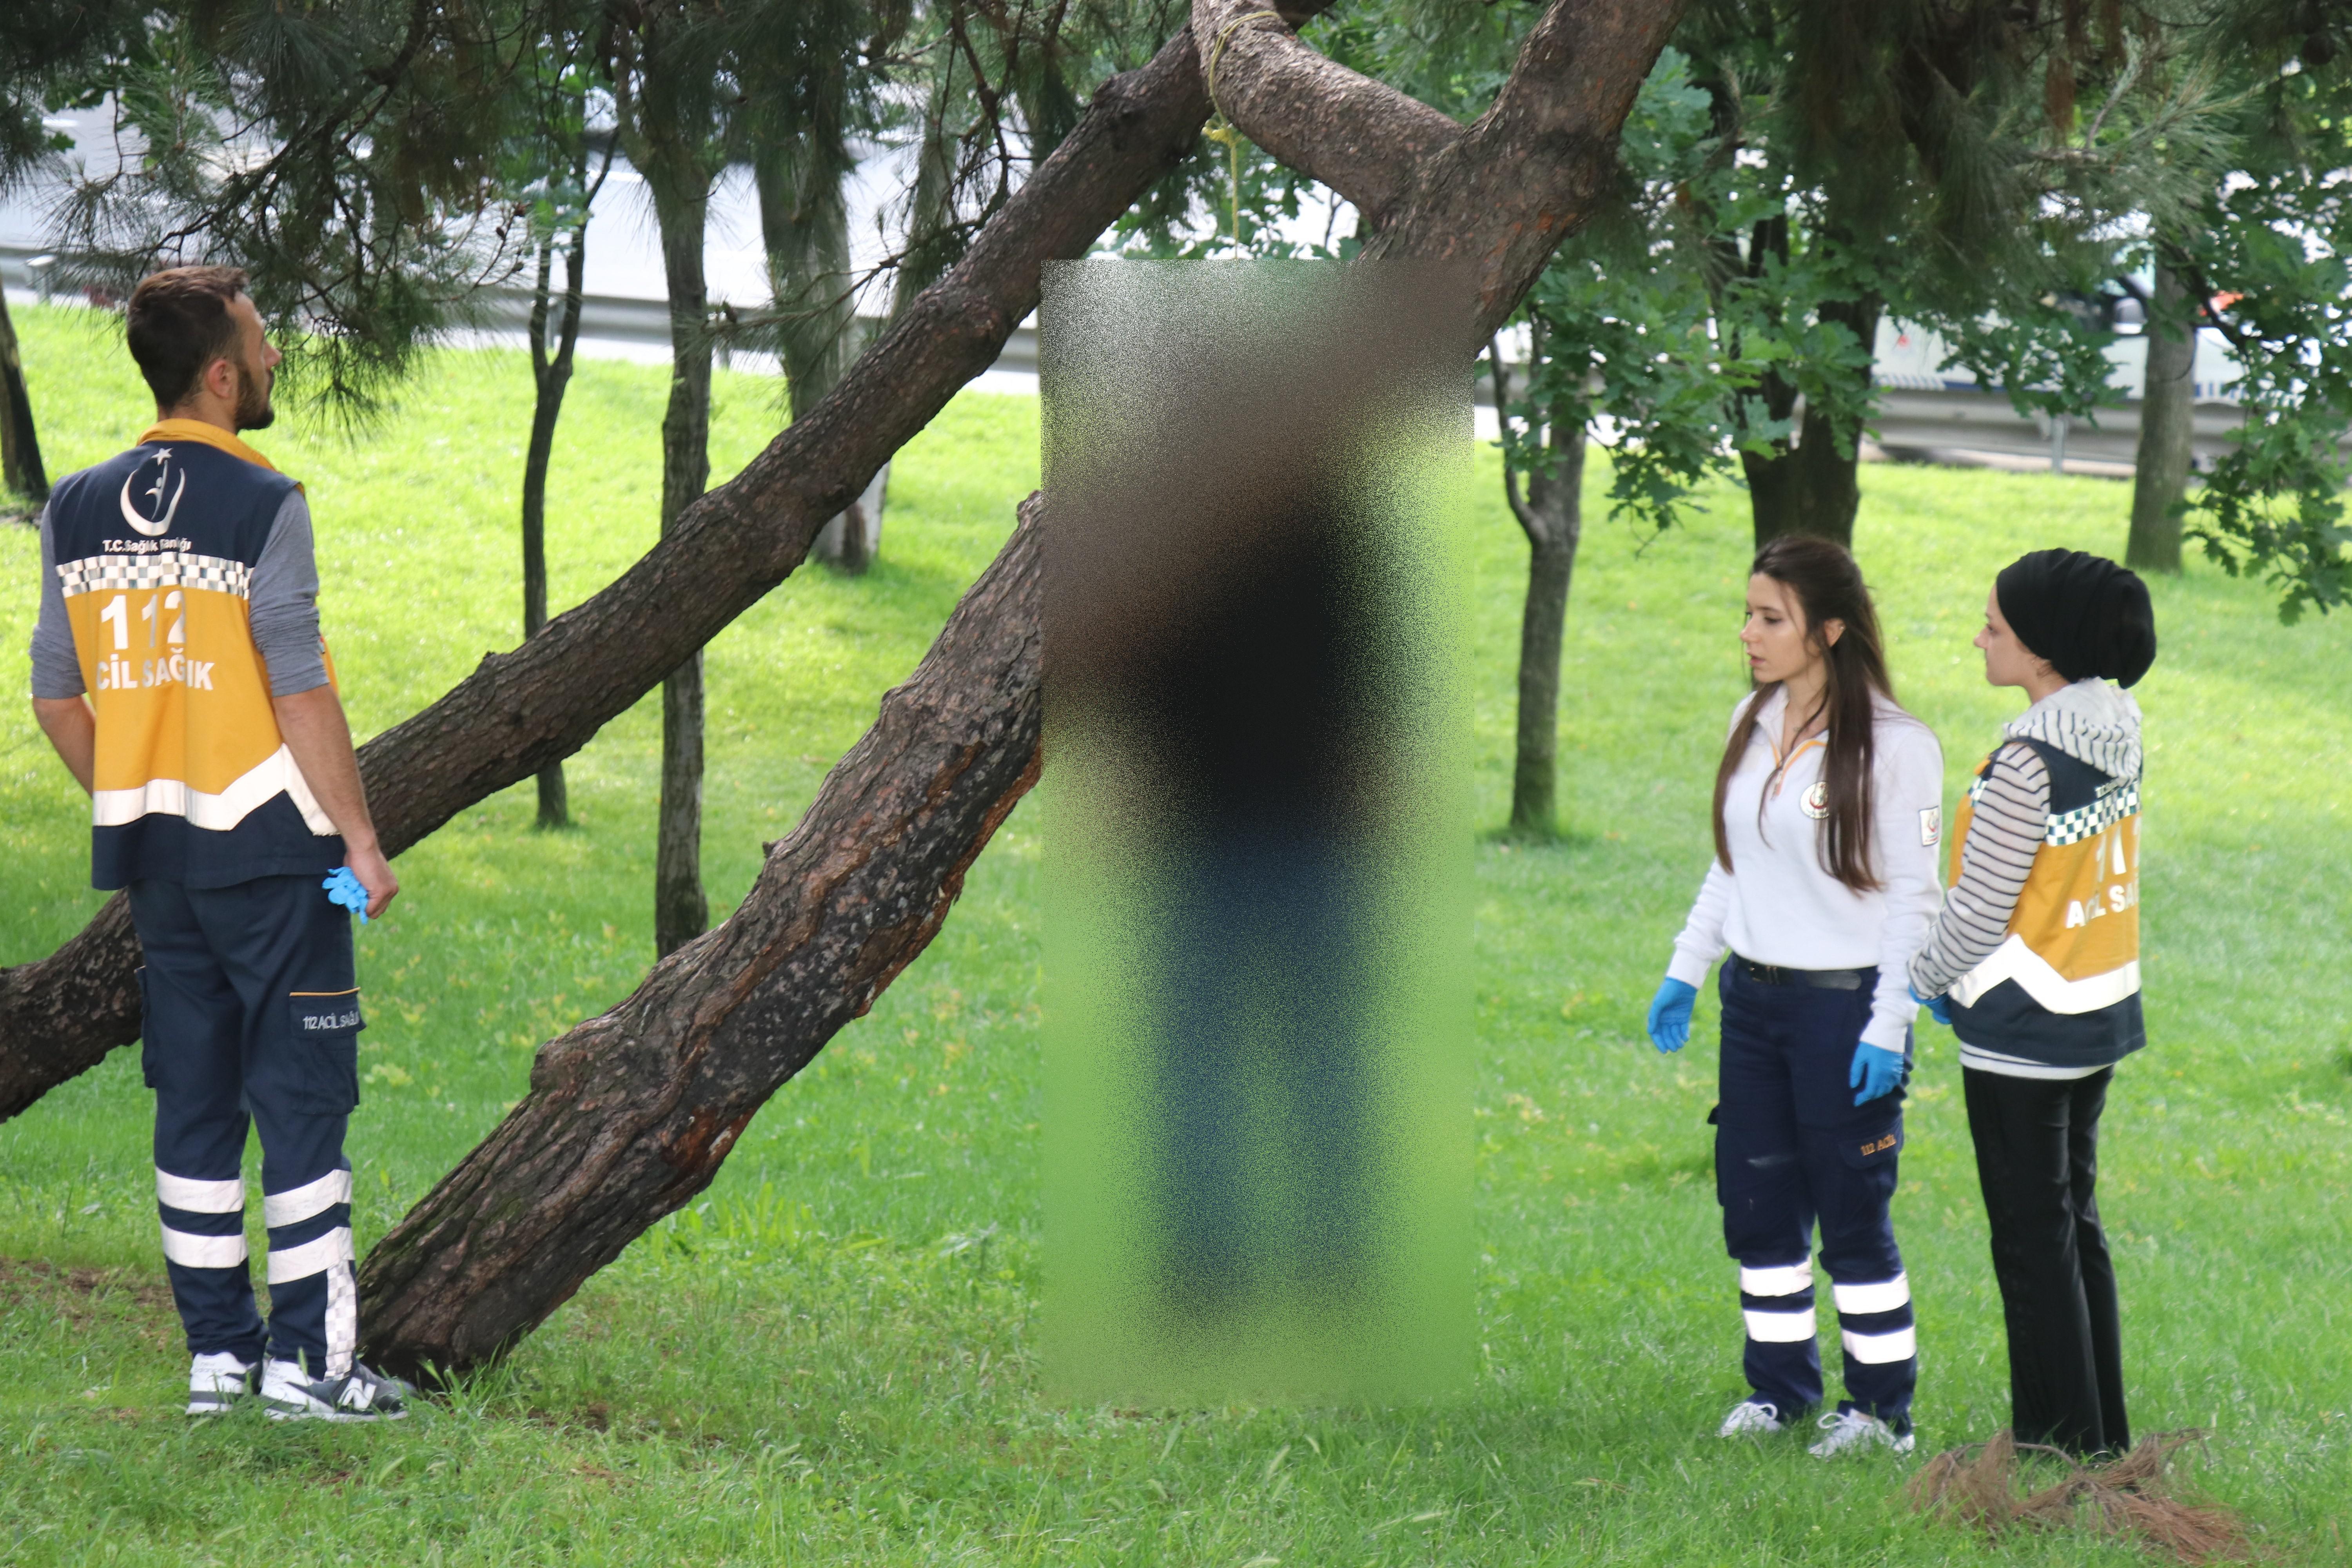 İstanbul Beyoğlunda bir kişi ağaca asılı bulundu